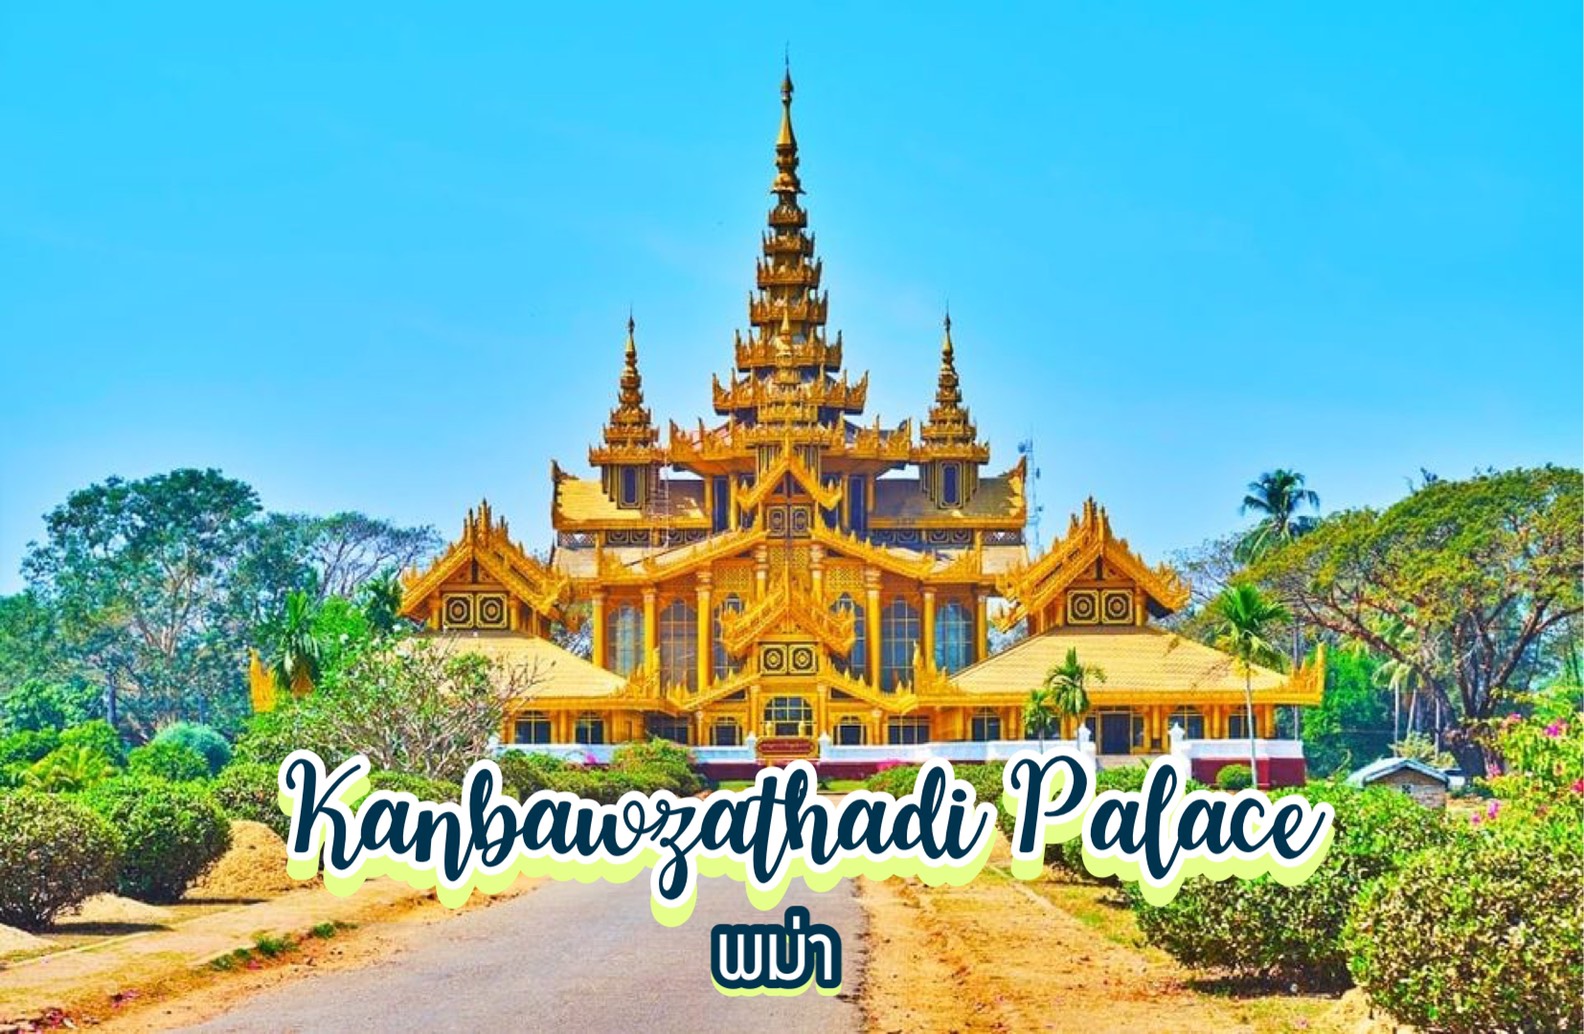 พระราชวังบุเรงนอง Kanbawzathadi Palace พม่า